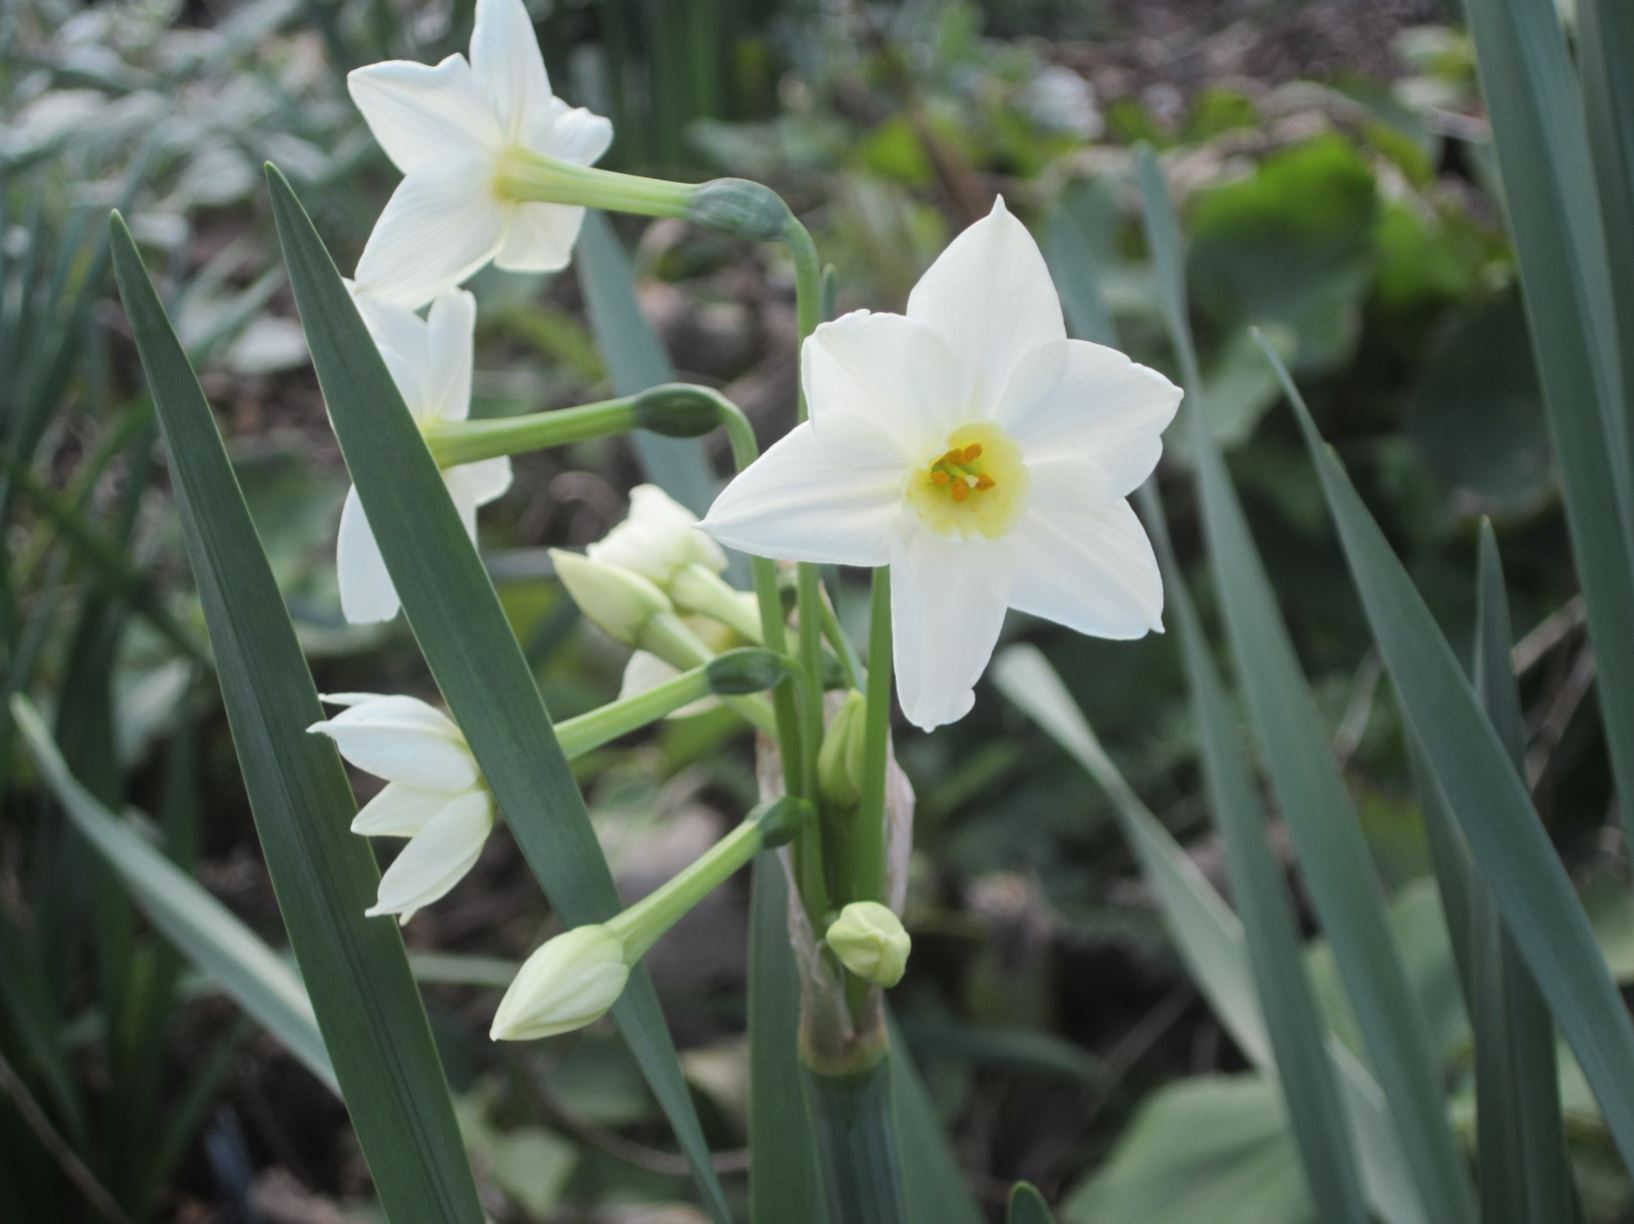 Narcissus 'Grand Primo' - tazetta daffodil